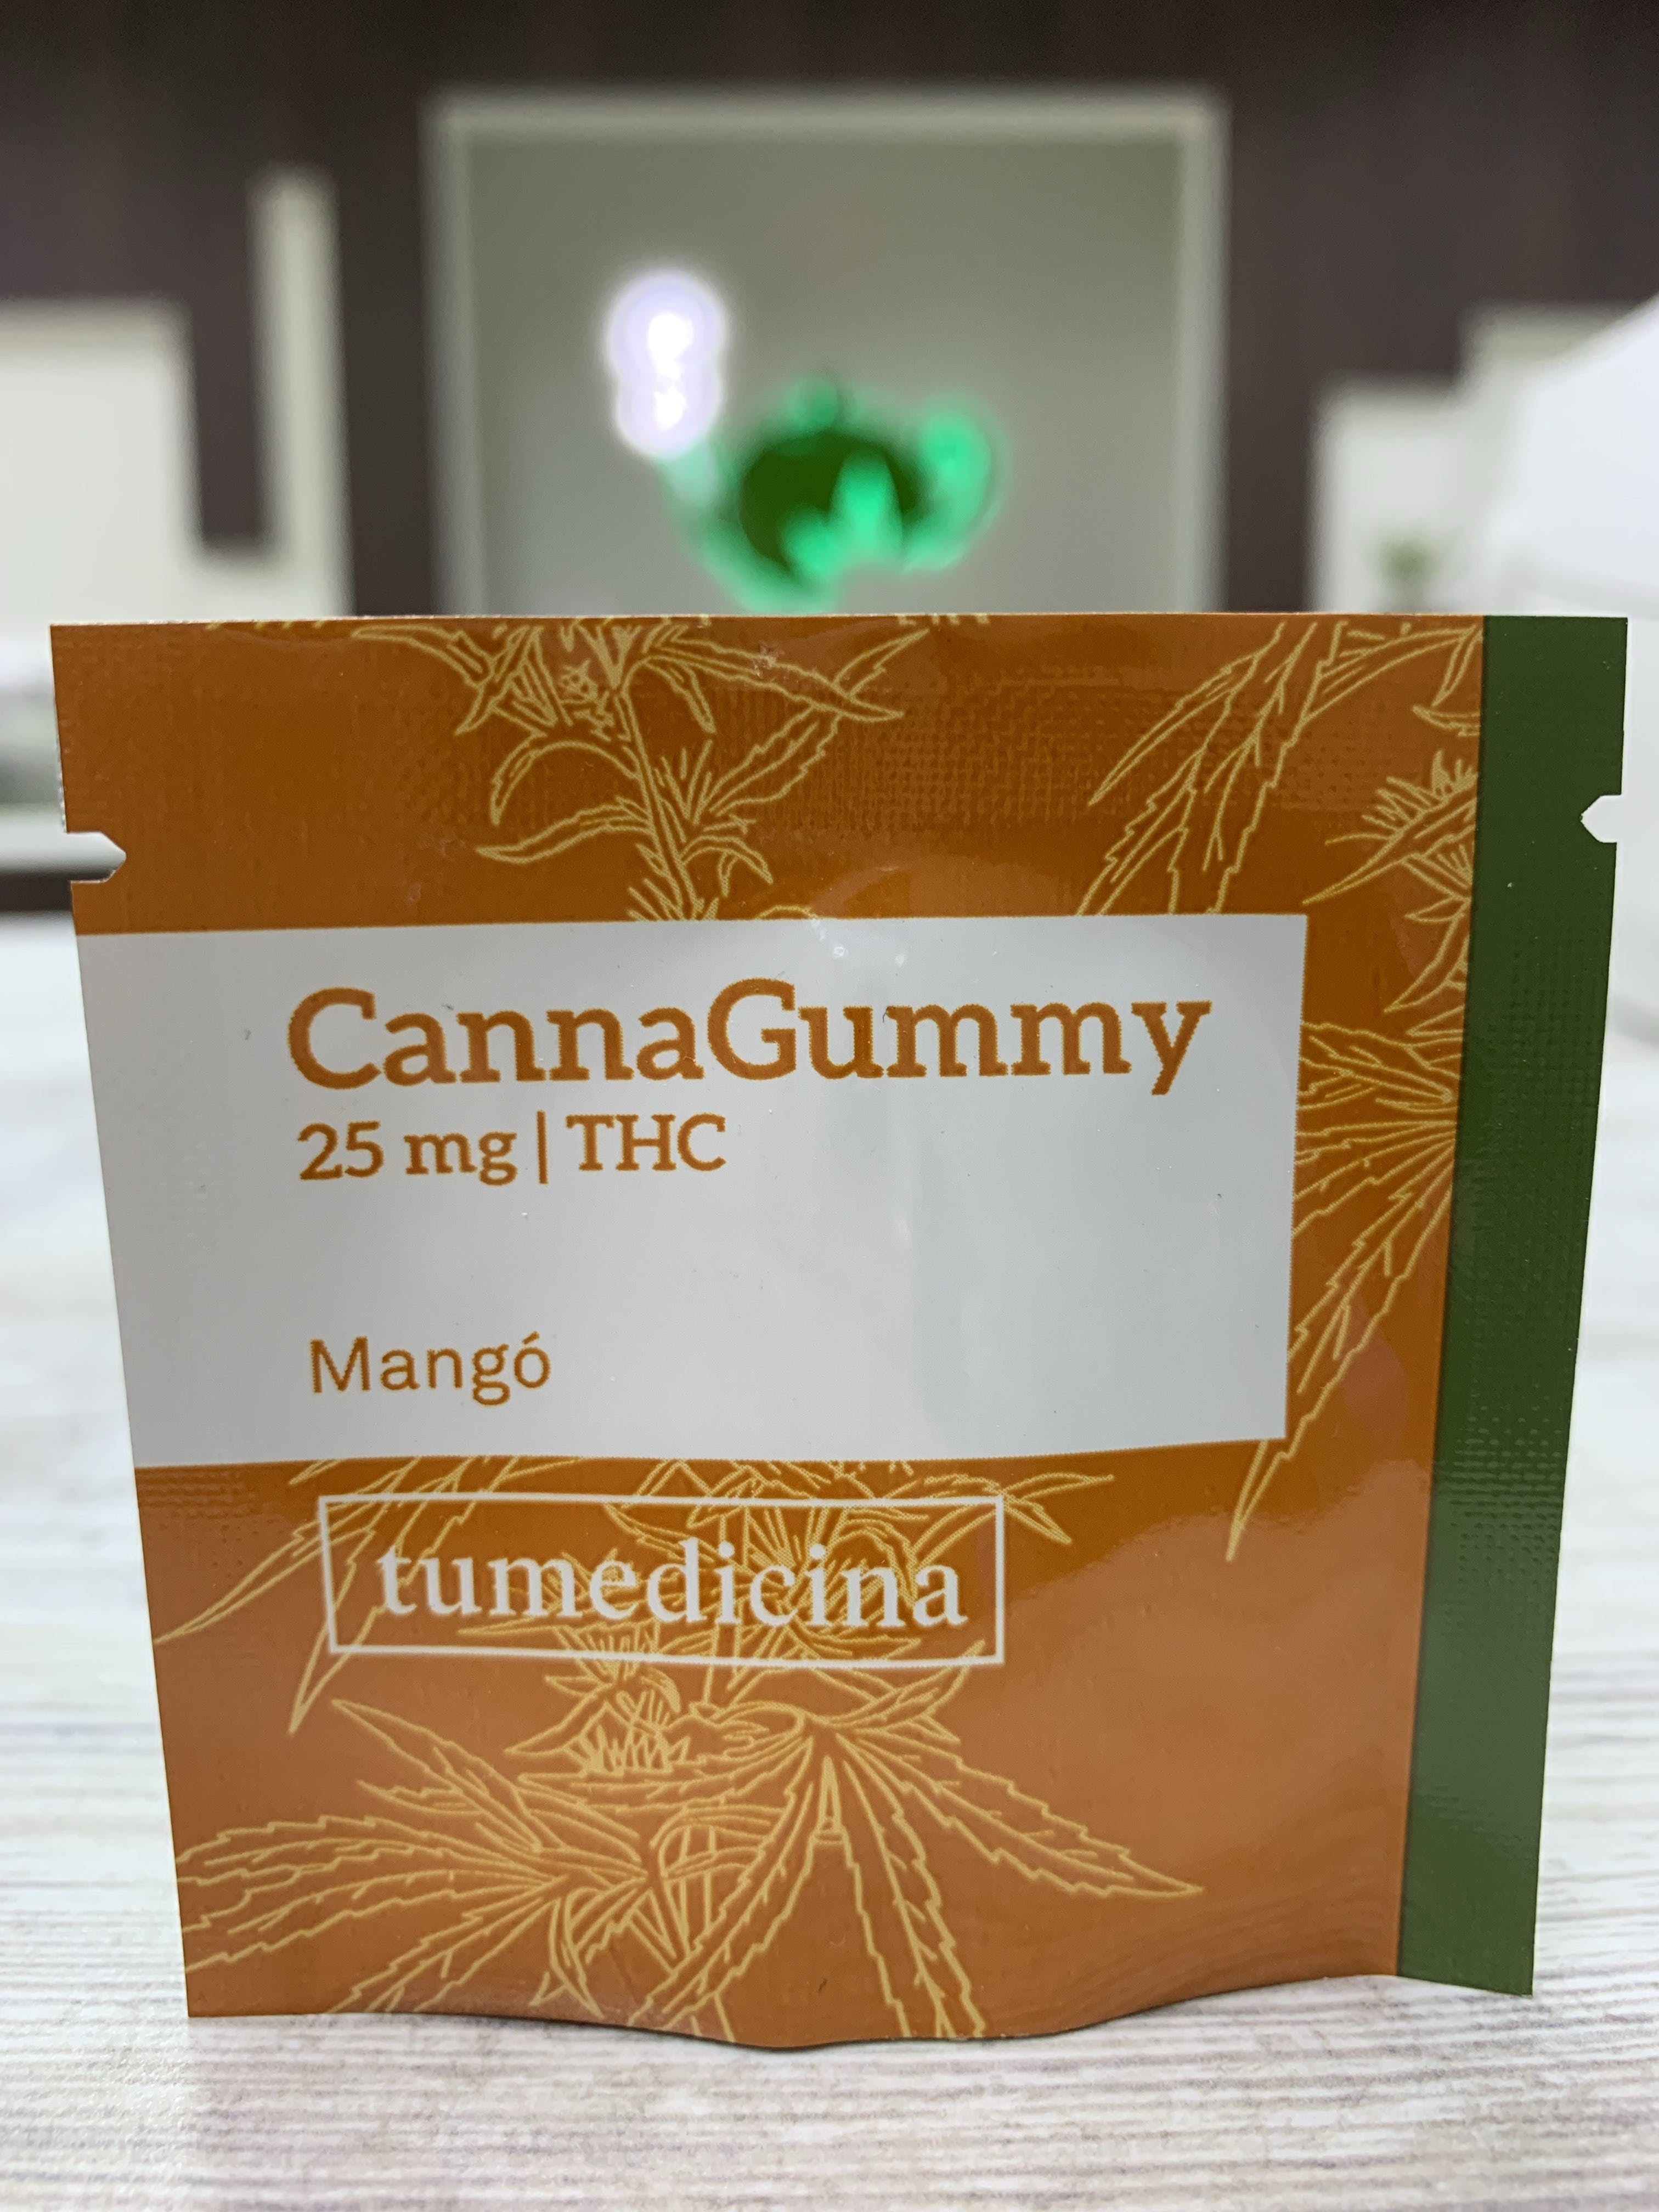 edible-canna-gummy-manga-26sup3-3b-25-mg-thc